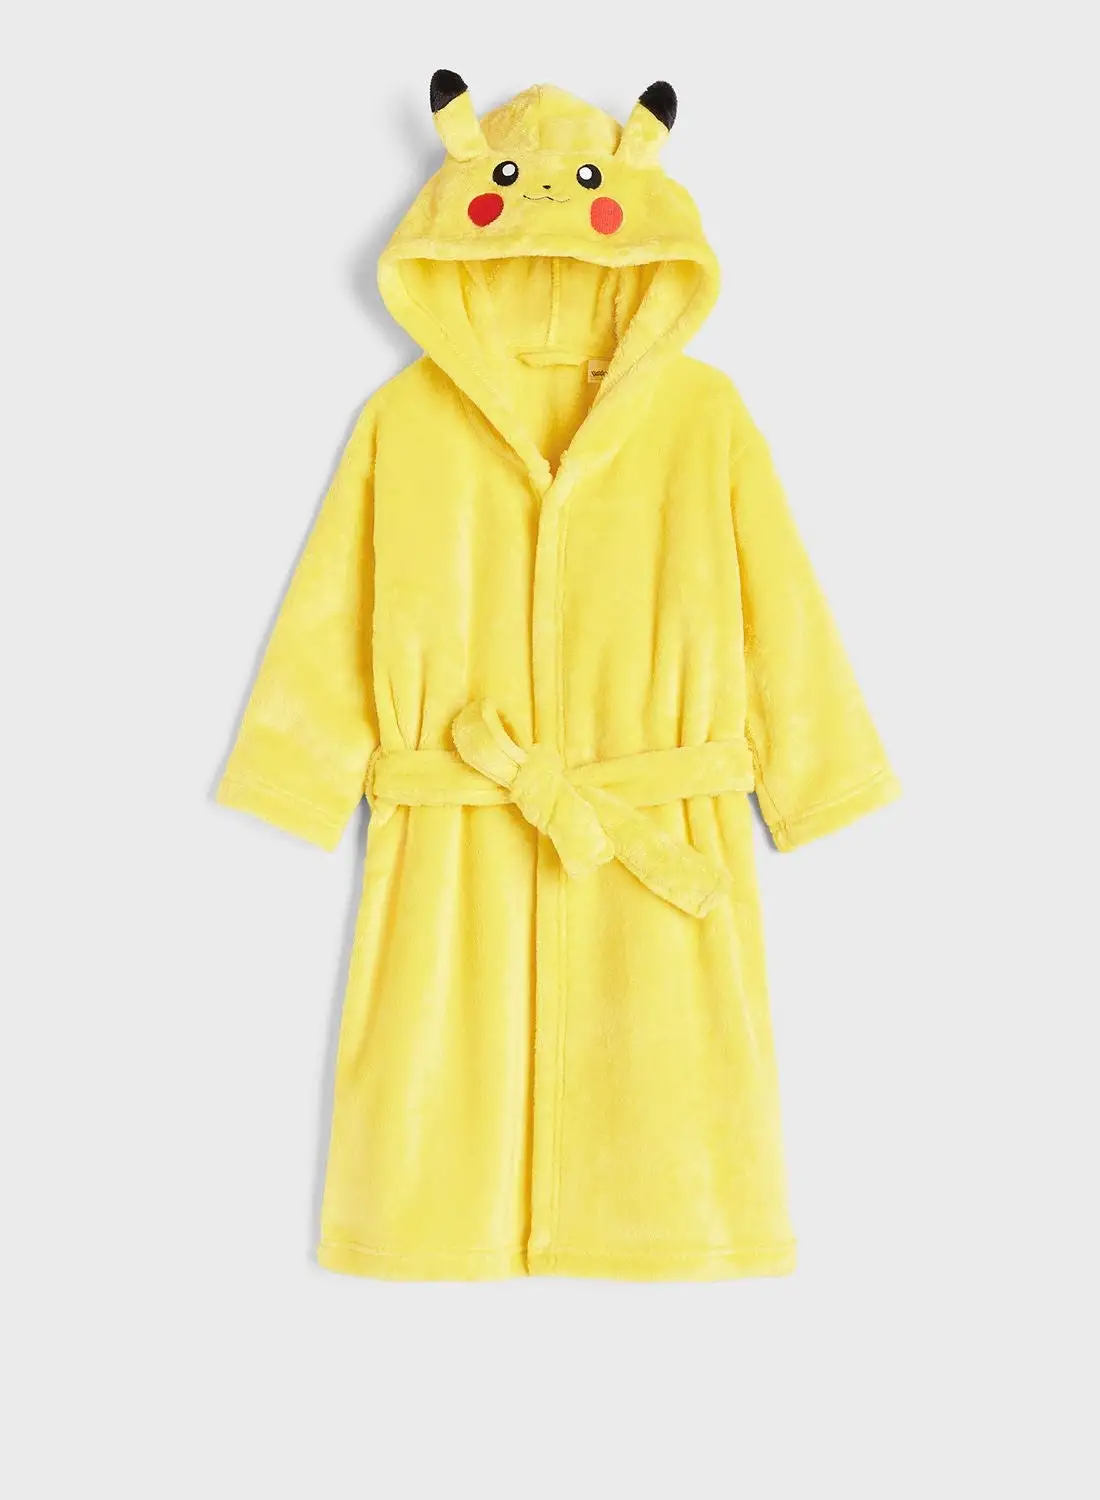 H&M Kids Pikachu Fleece Dressing Gown